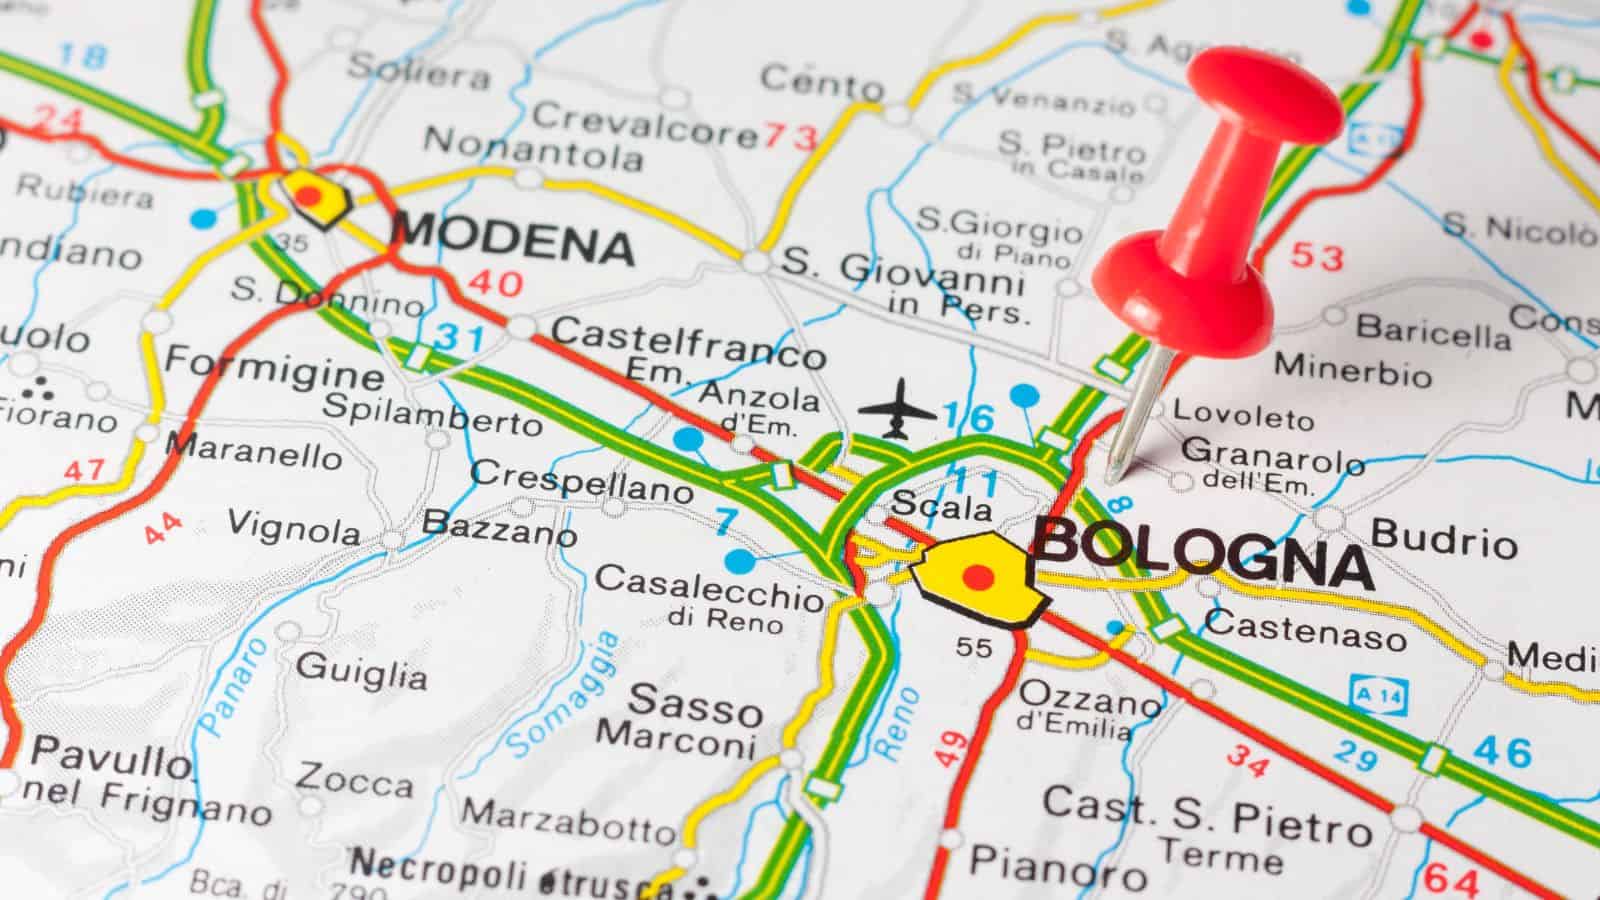 Il limite dei 30 km/h di Bologna ha modificato l'incidenza dei morti su strada e degli incidenti gravi